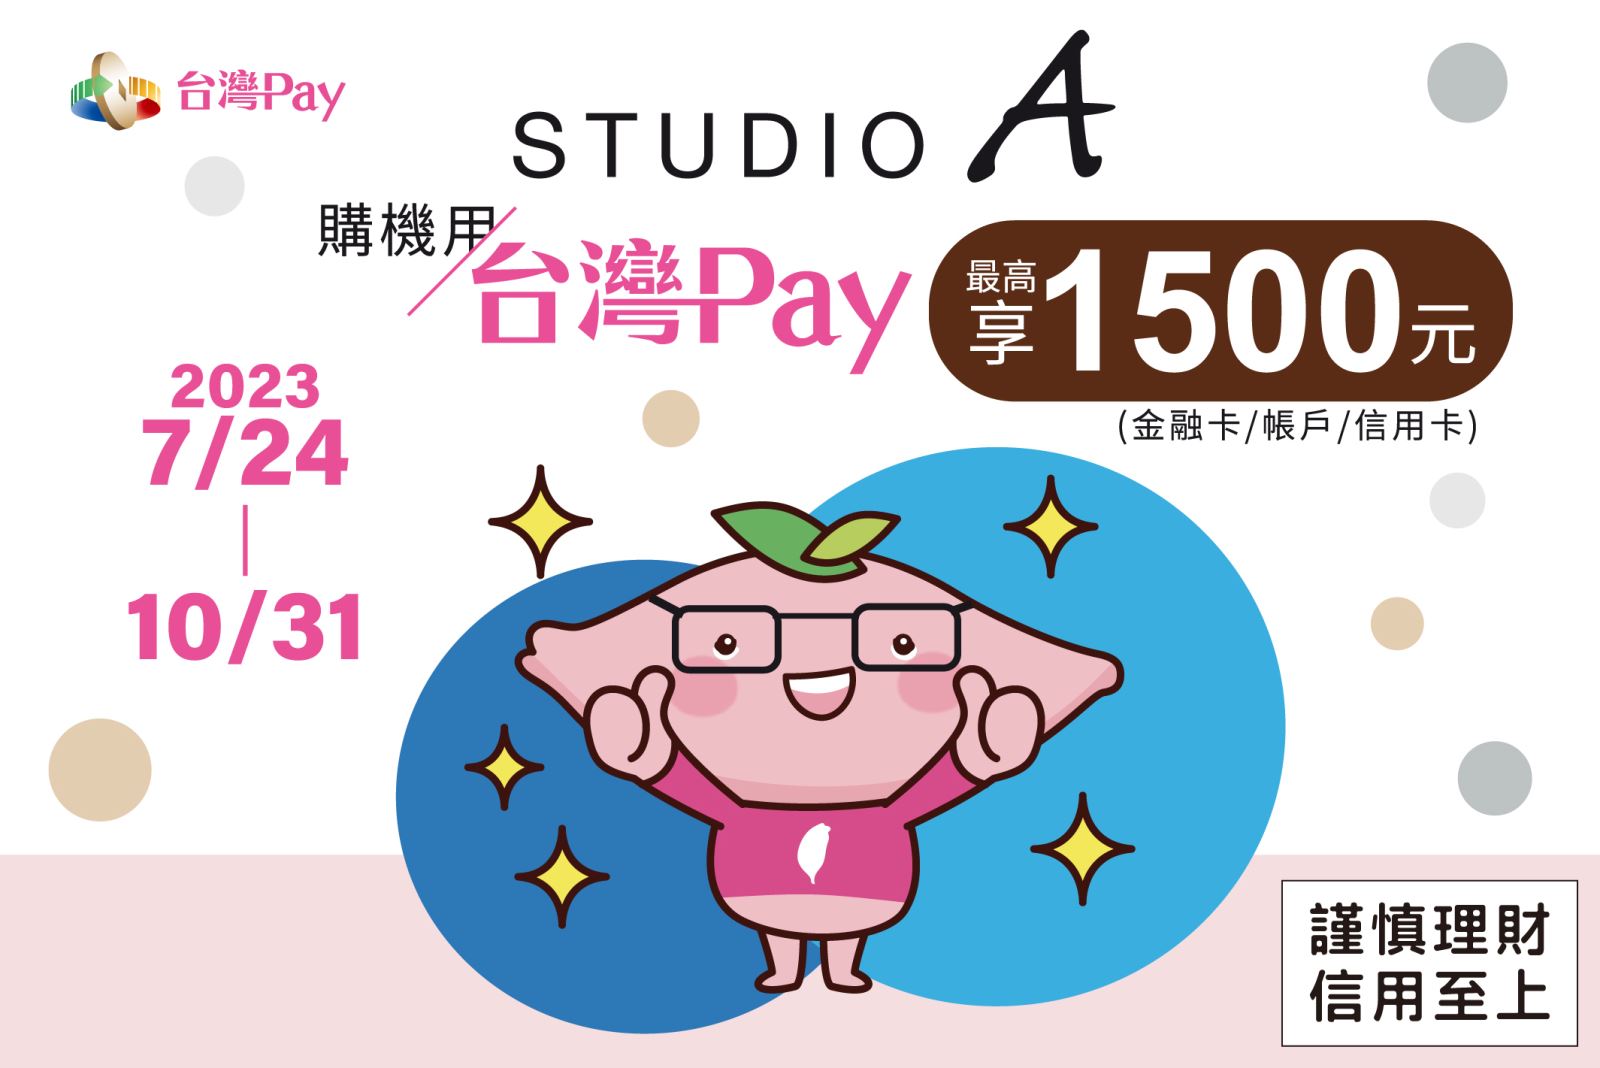 出示「台灣Pay」付款碼進行支付，單筆消費不限金額，可享10%現金回饋，單筆交易回饋金上限新臺幣1,500元。